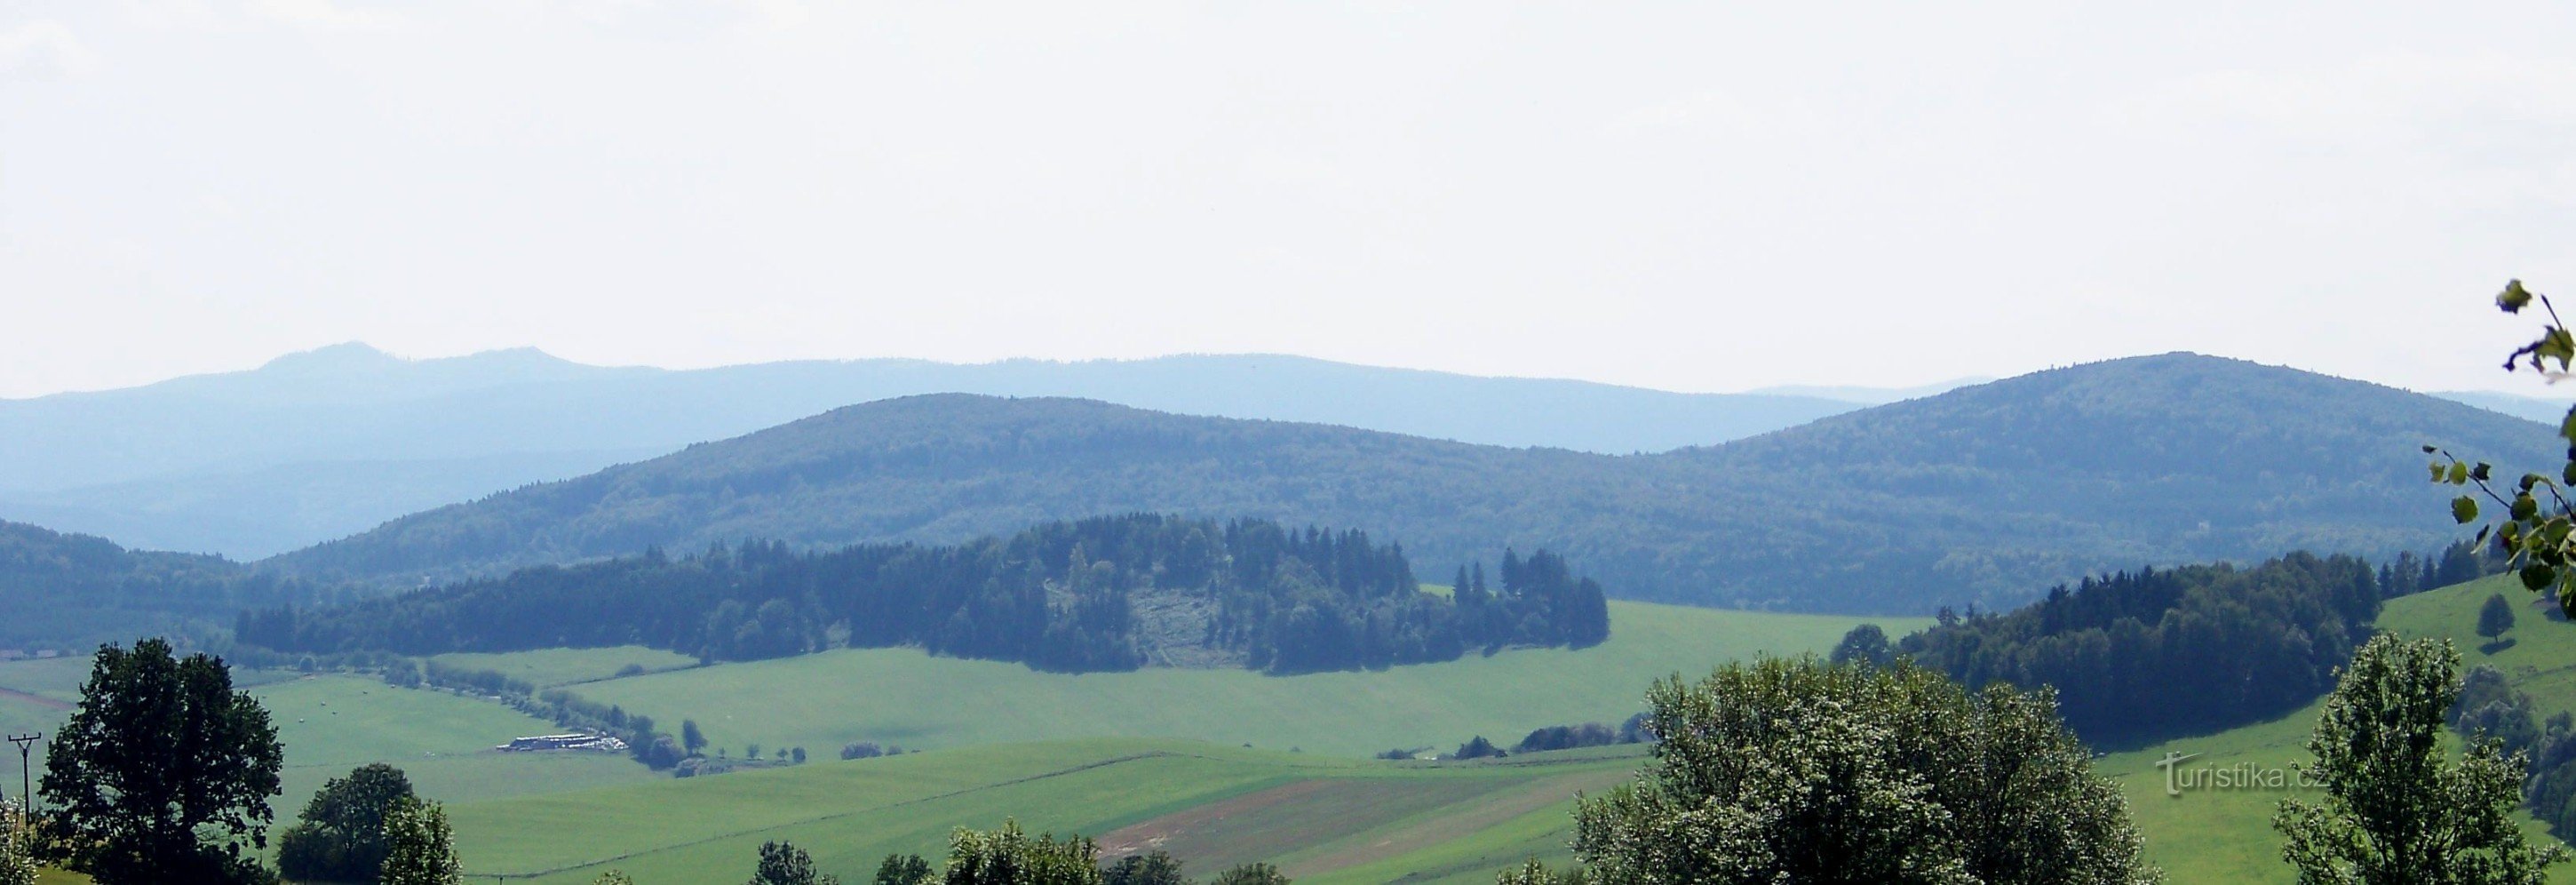 Jezvinec all'estrema destra, accanto a Havranice, sullo sfondo Ostrý e altre creste di confine..ní